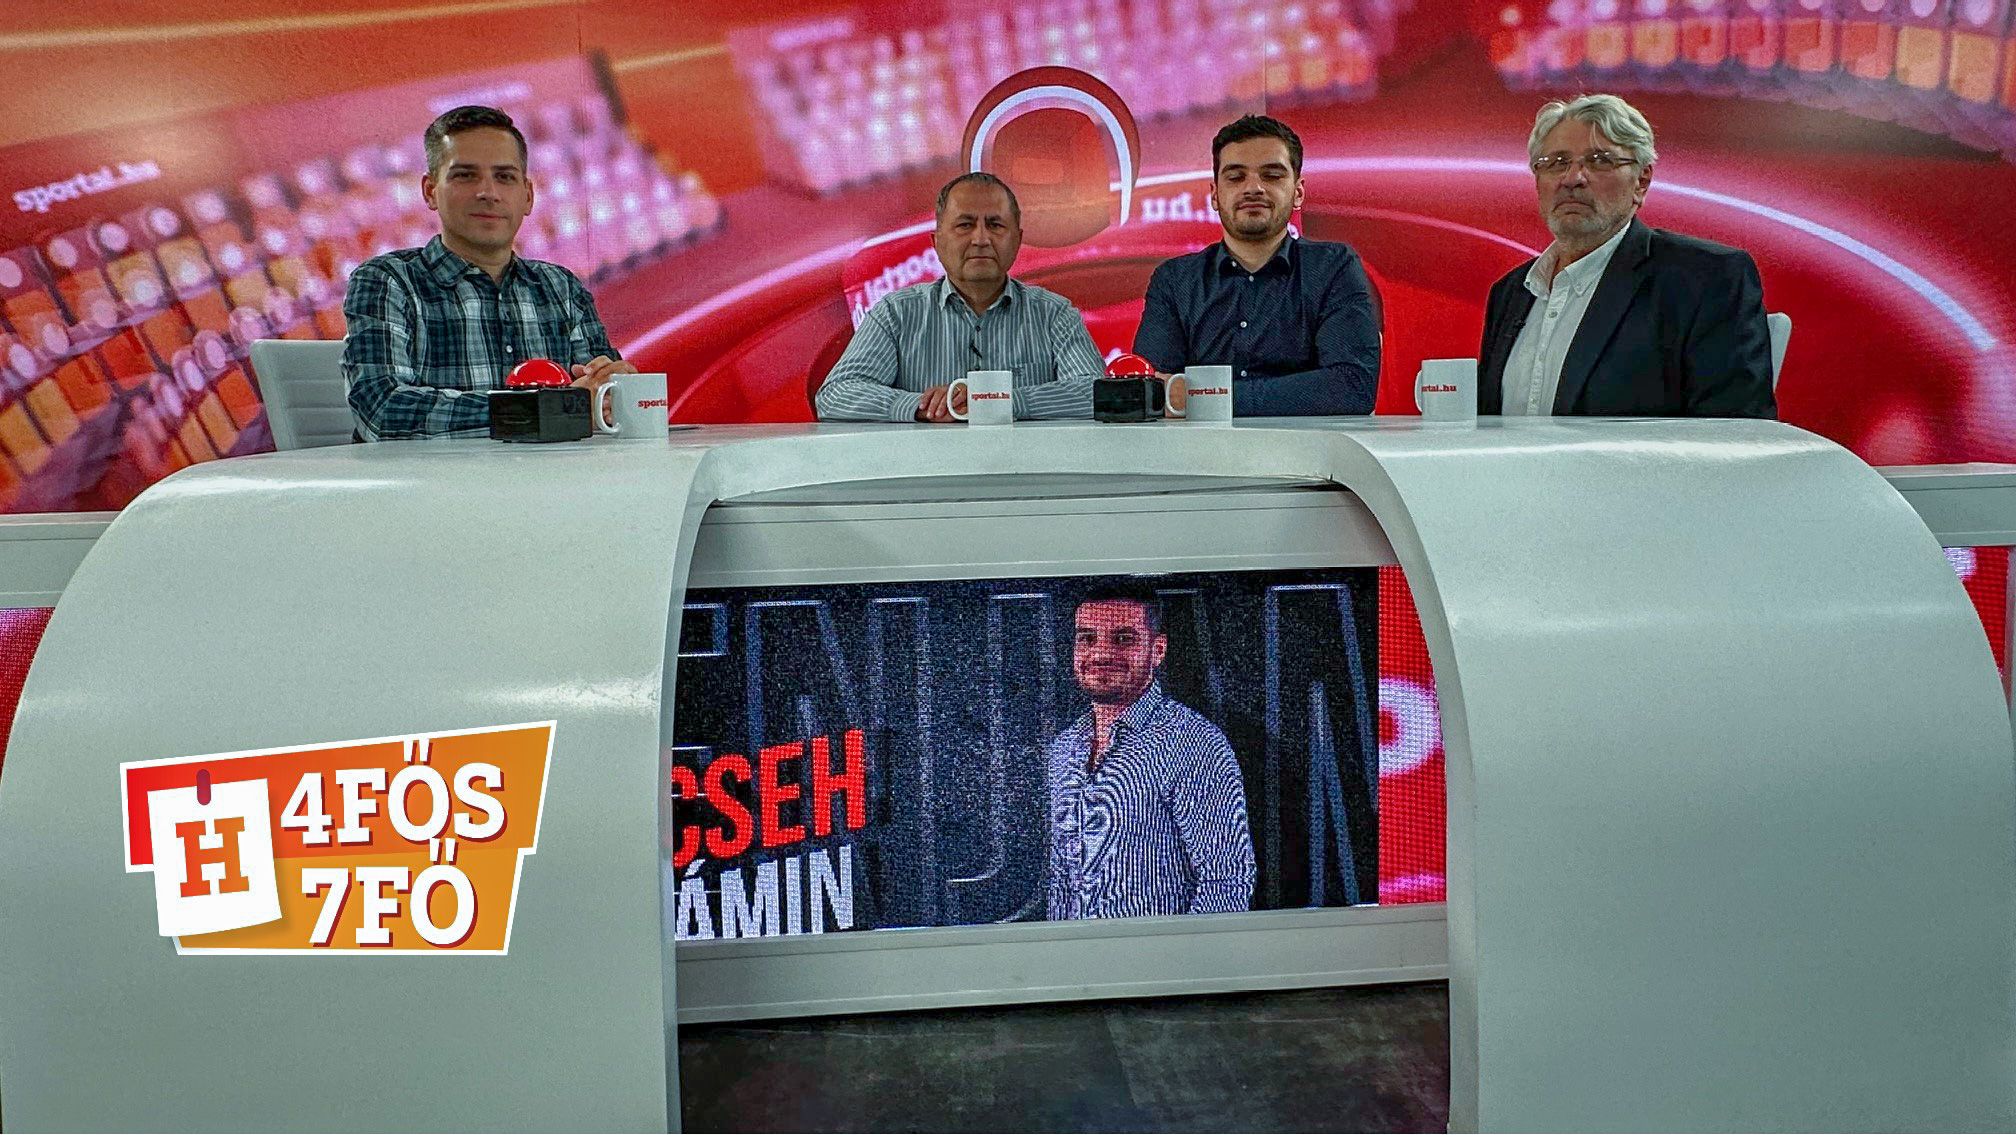 A Sportál Tv stúdiójában: Cselleng Ádám, Szekeres Tamás, Cseh Benjámin és meghívott vendégünk: Dr. Hargitay András